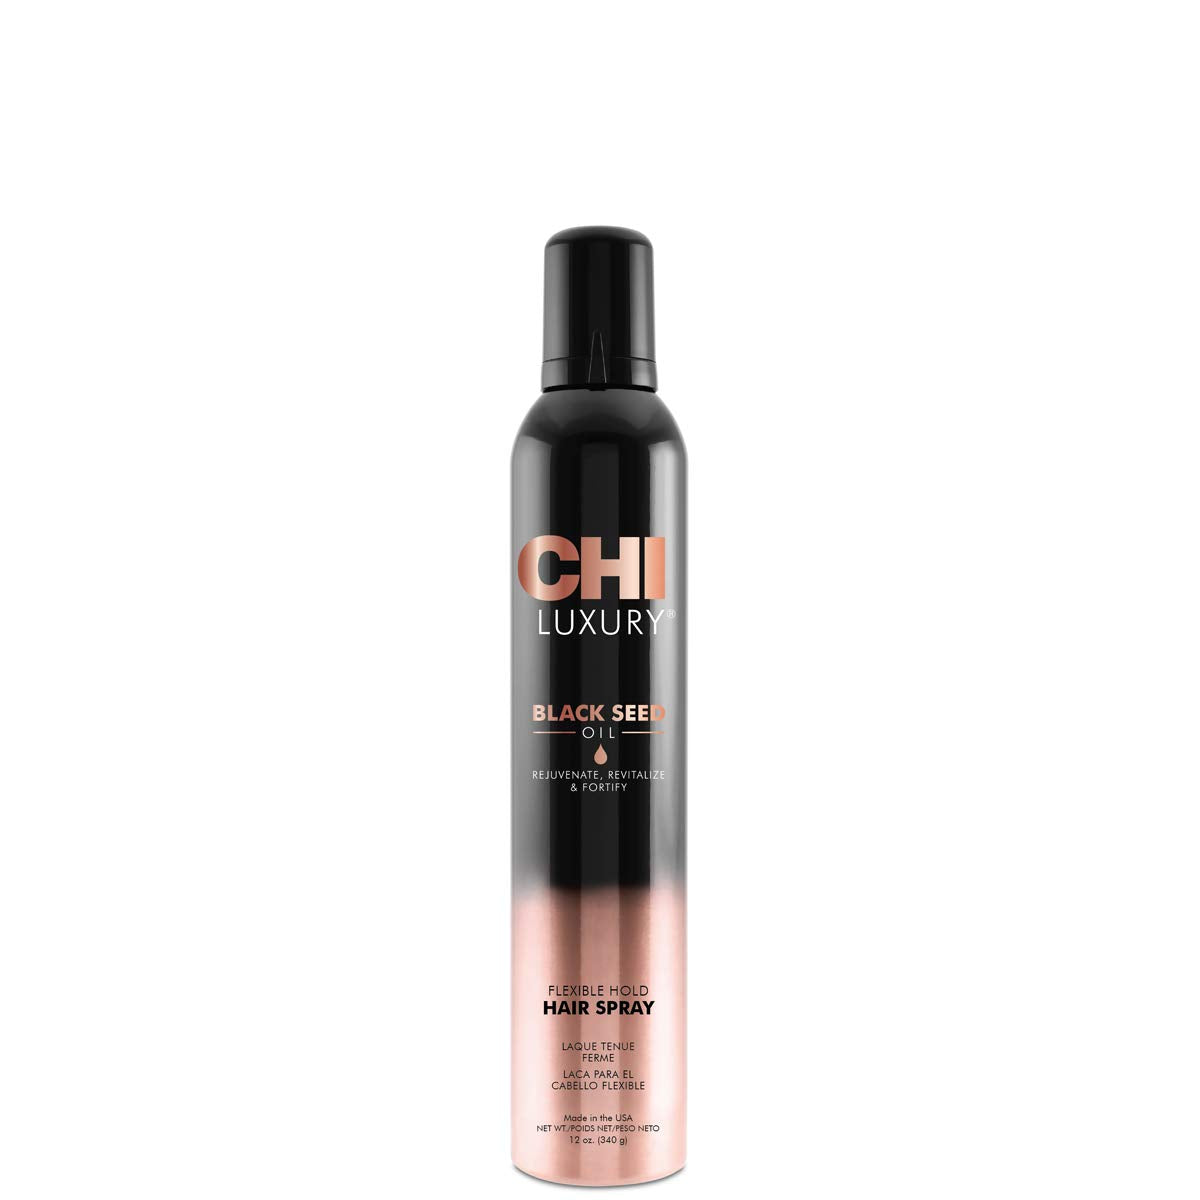 CHI Luxury Black Seed Oil Flexible Hold Hair Spray, 10 oz, 10 fl. oz